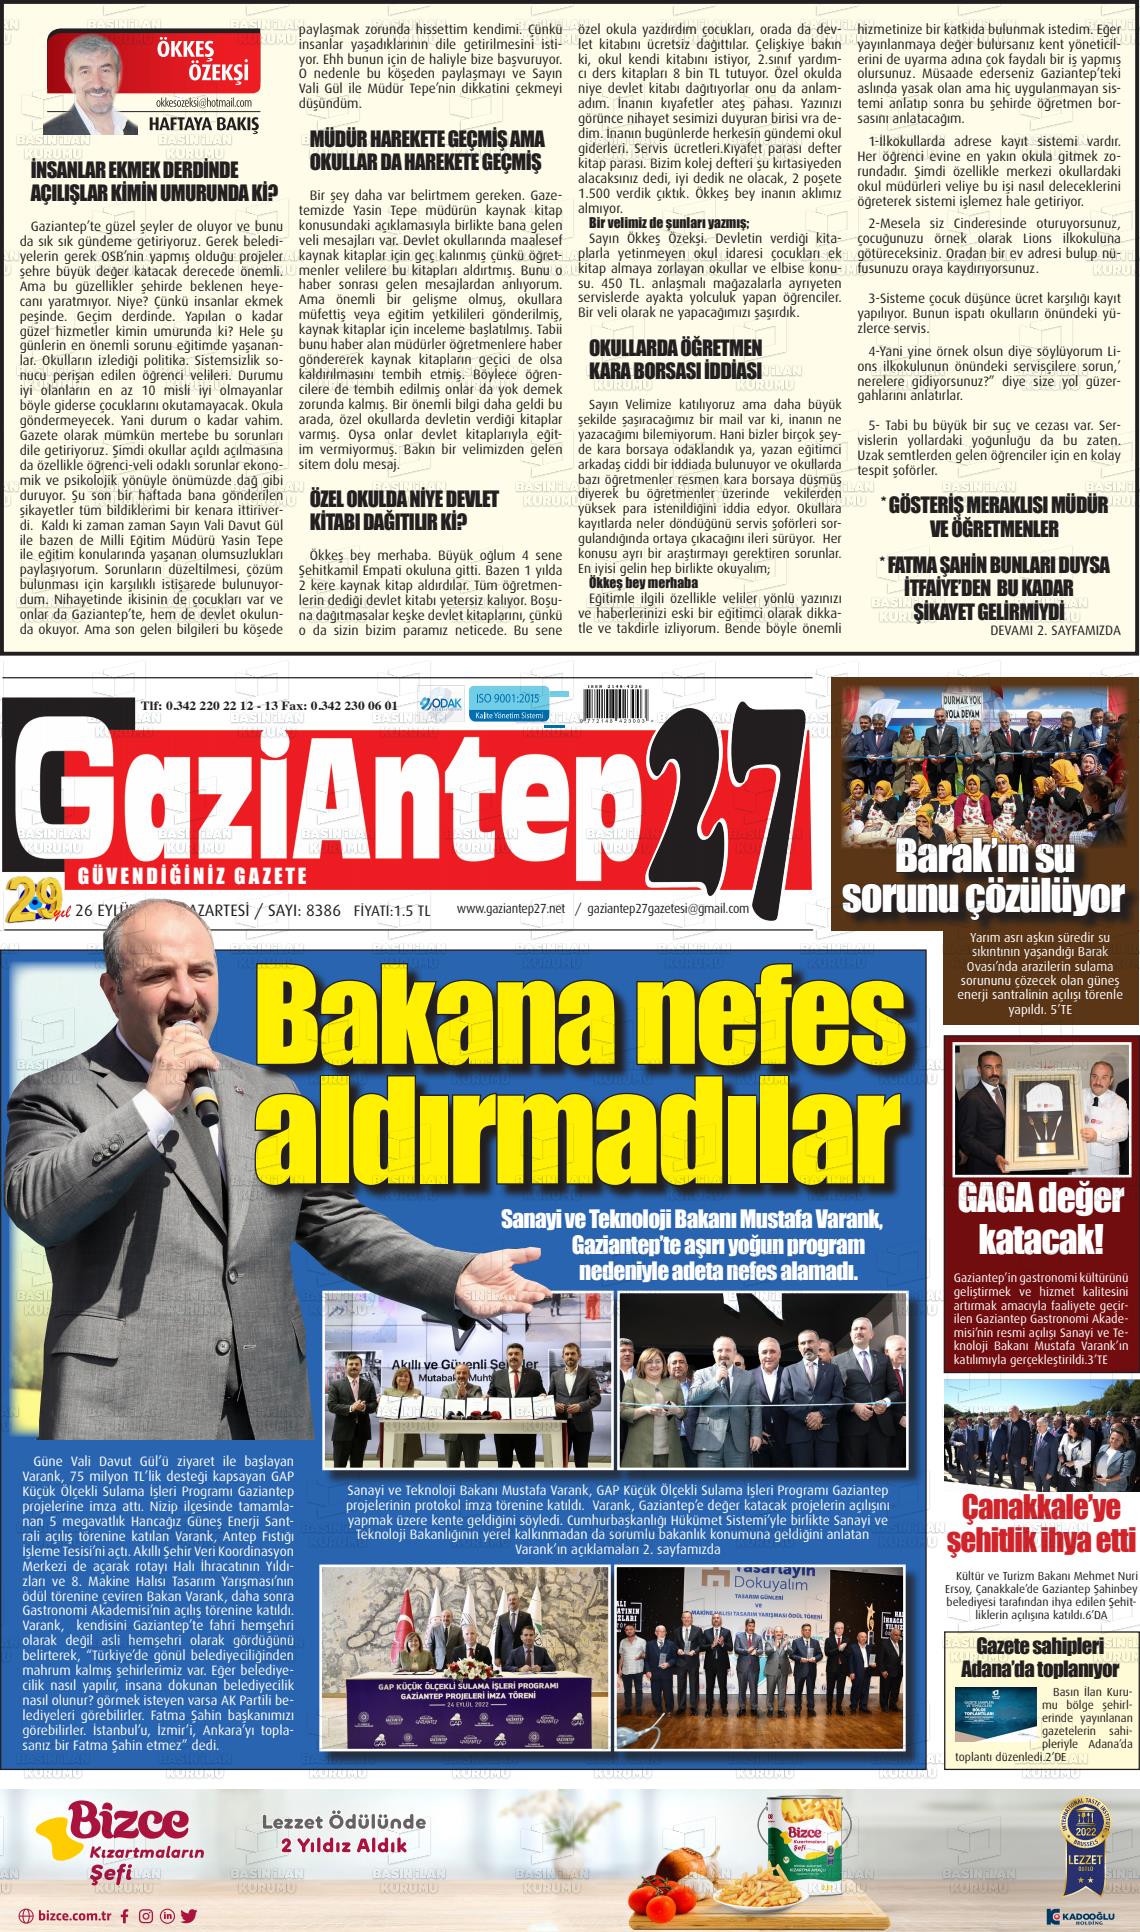 26 Eylül 2022 Gaziantep 27 Gazete Manşeti